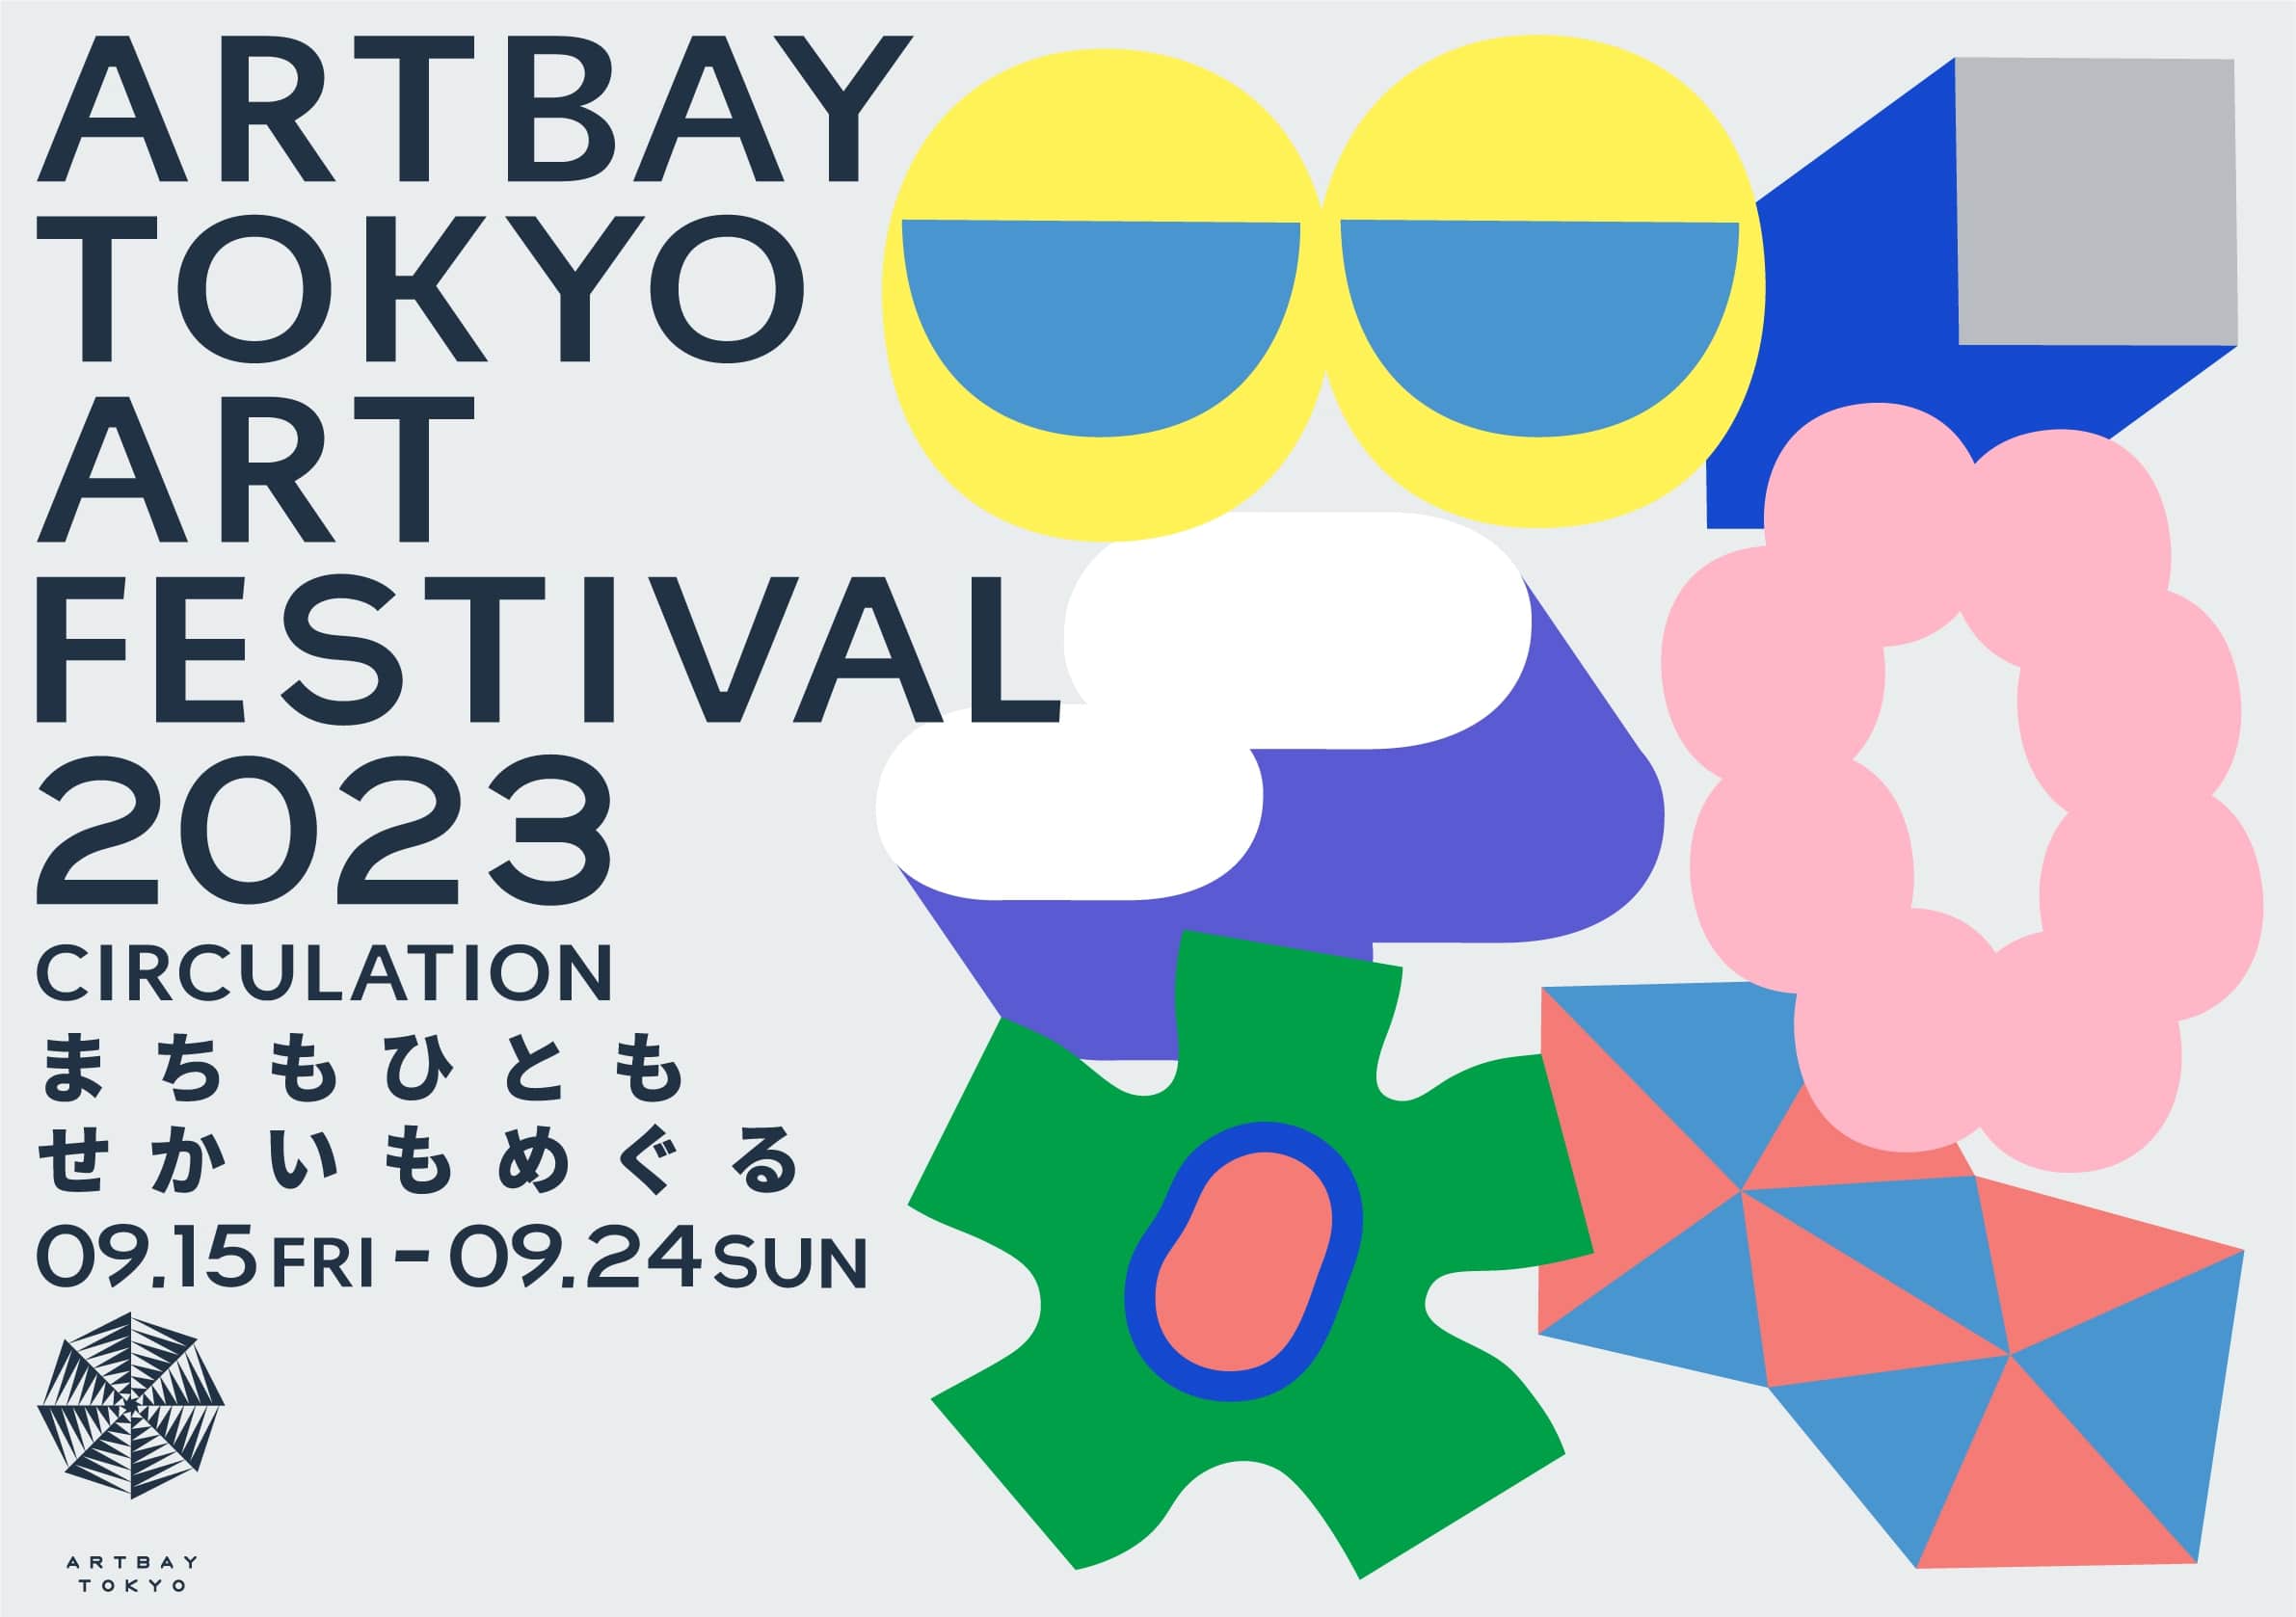 【キッチンカーイベント情報】ARTBAY TOKYOアートフェスティバル2023が開催されます！